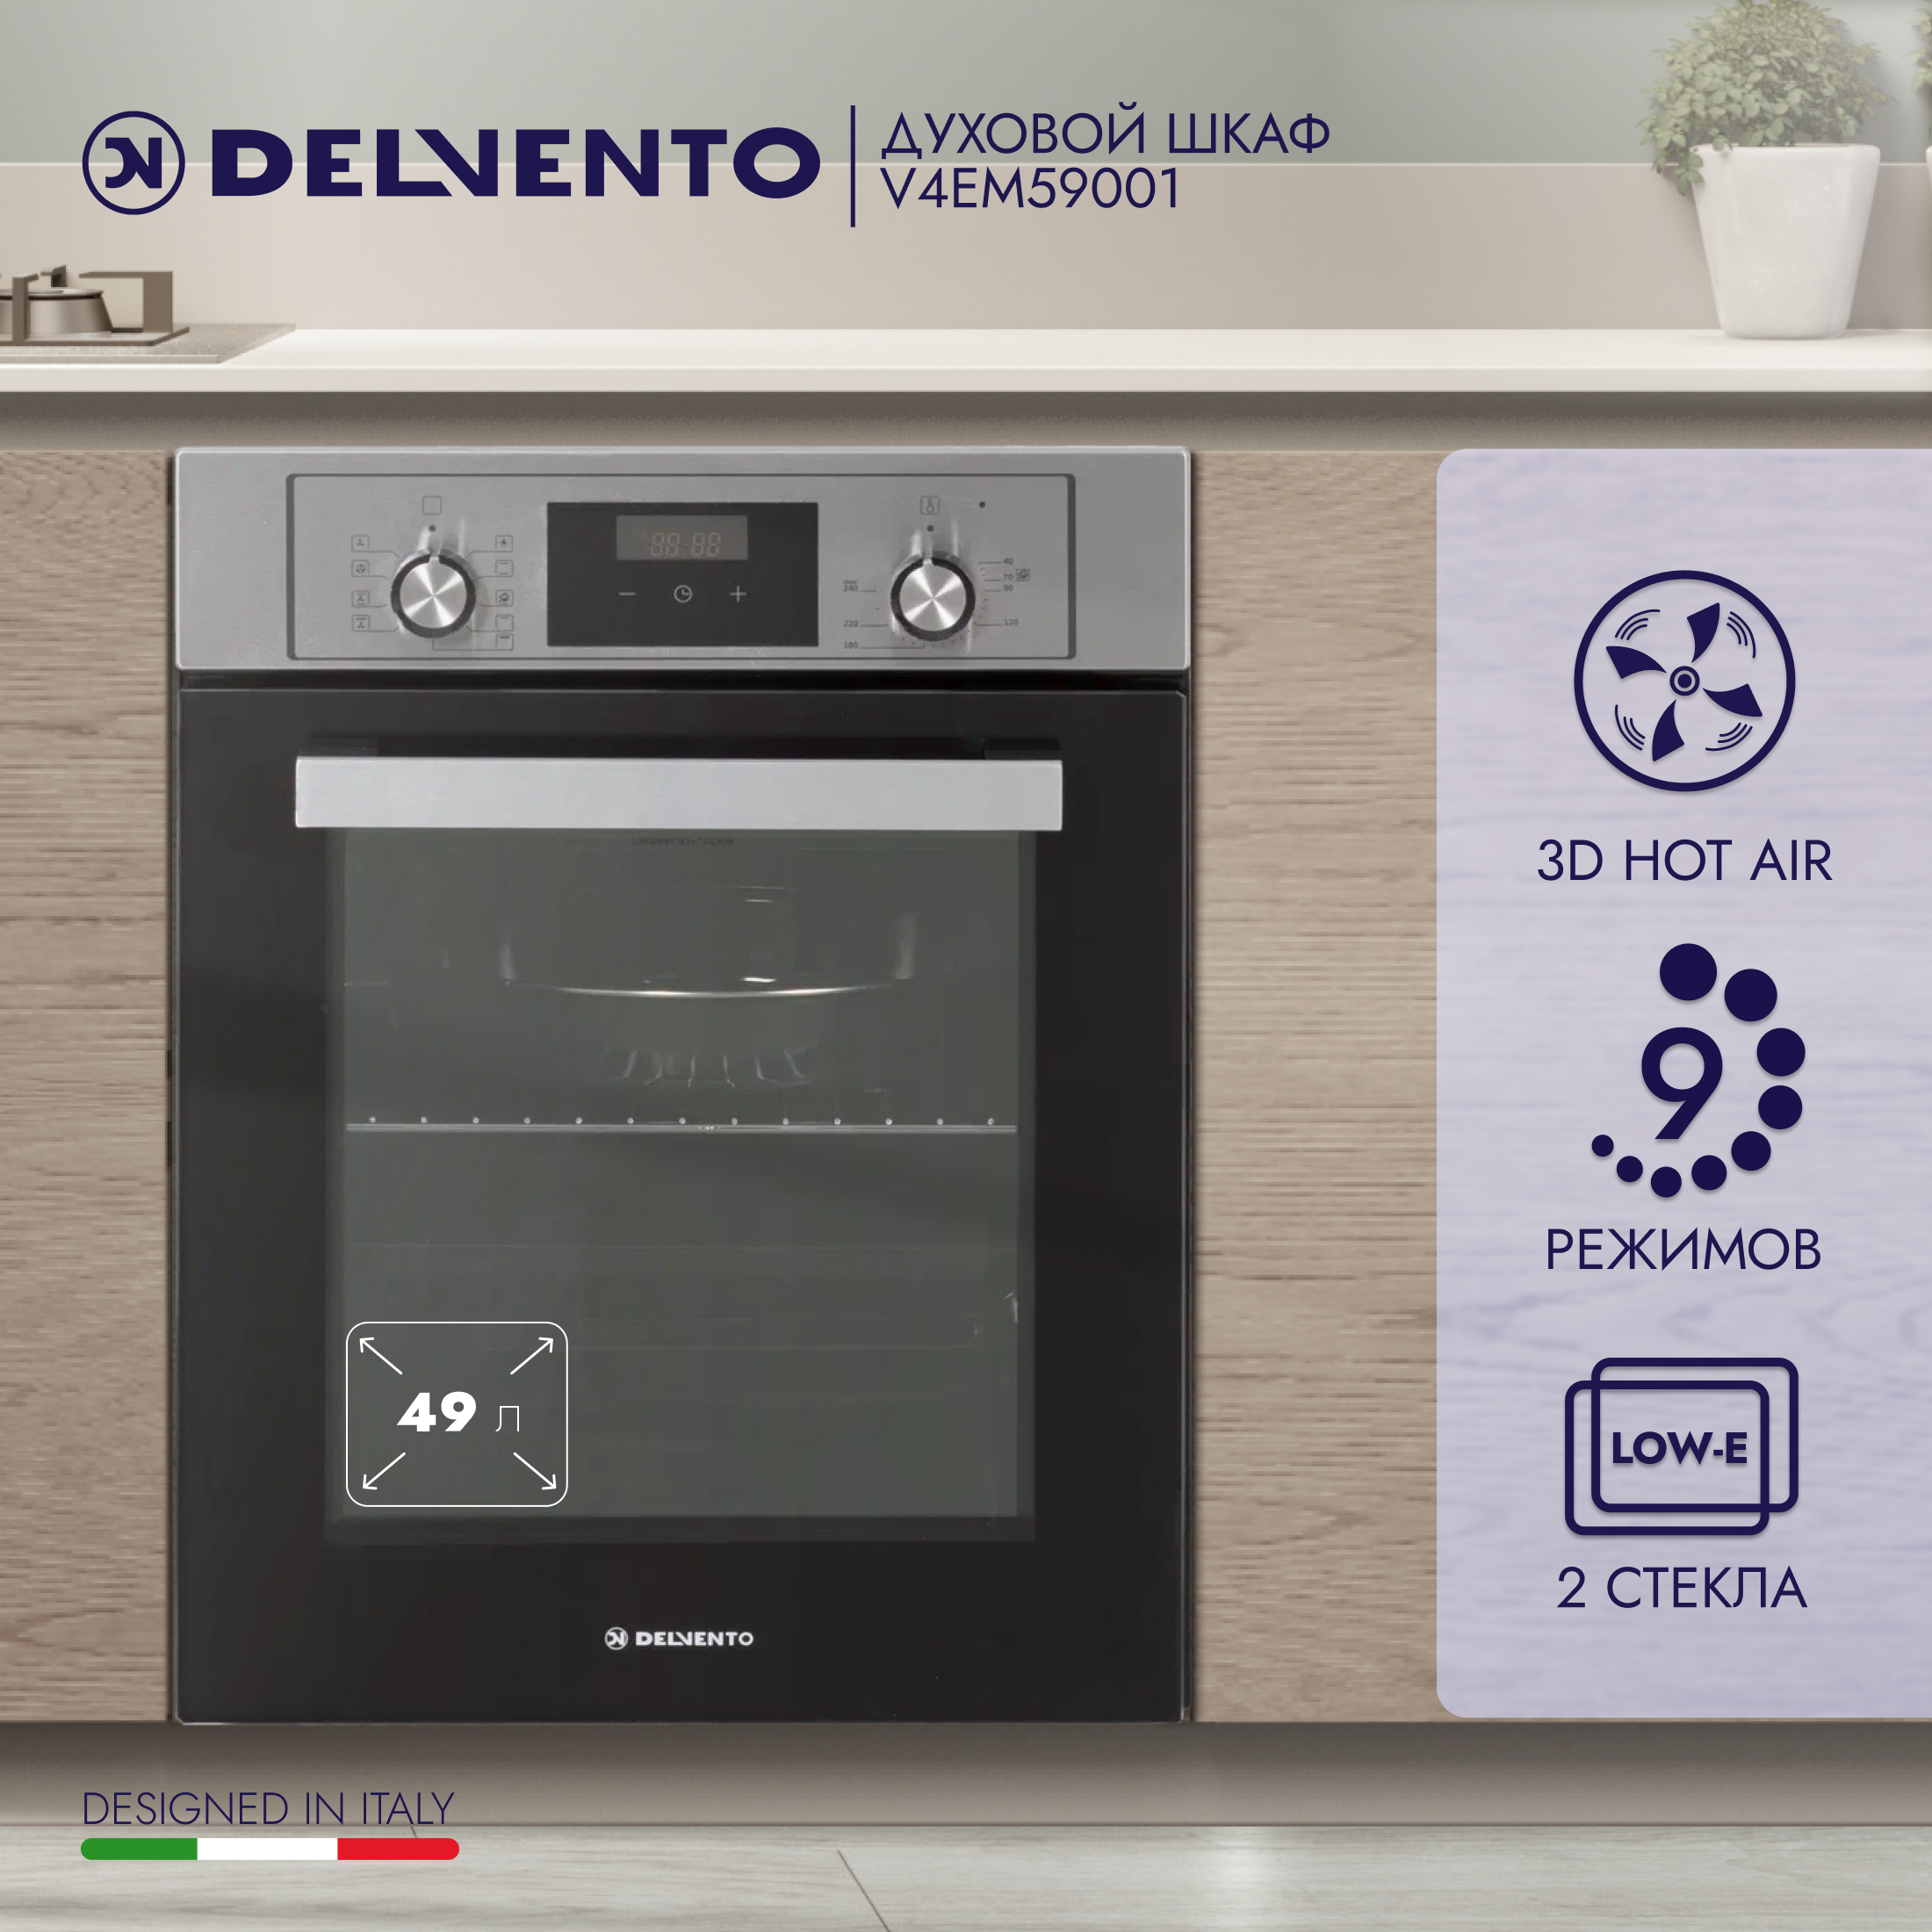 Встраиваемый электрический духовой шкаф DELVENTO V4EM59001 серебристый, черный электропечь delvento d2505 ergonomic